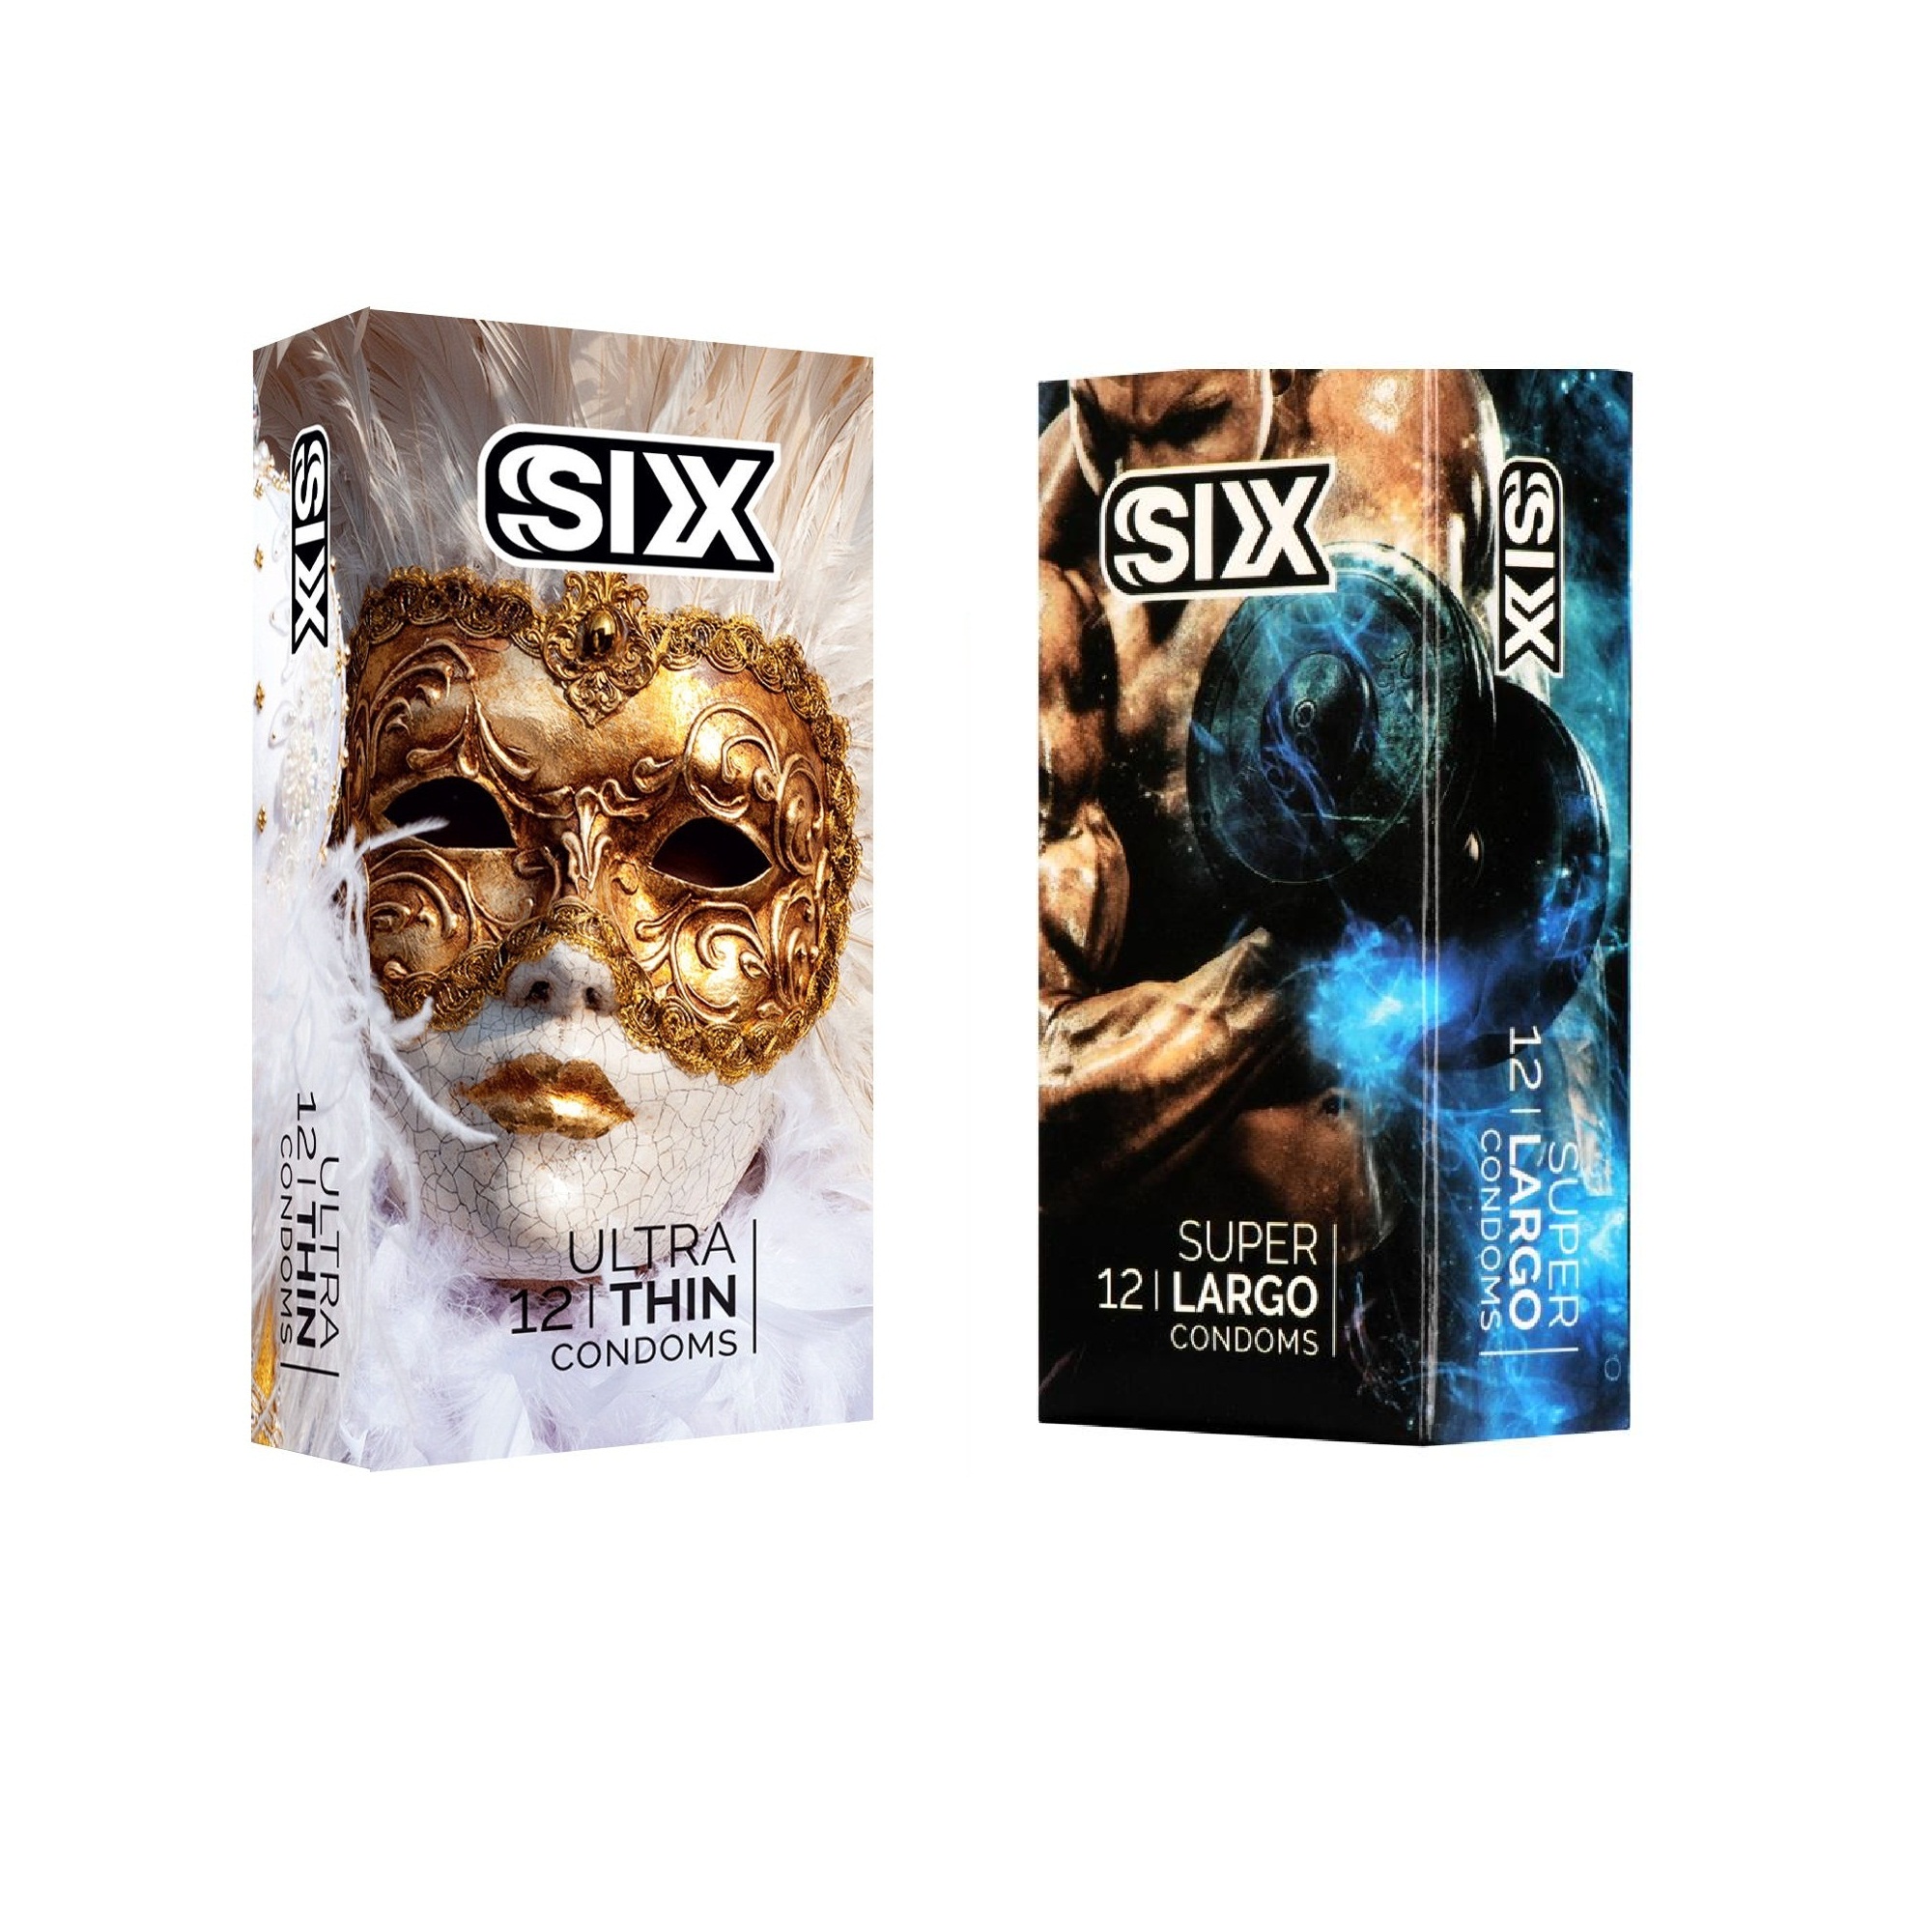 کاندوم سیکس مدل Ultra Thin بسته 12 عددی به همراه کاندوم سیکس مدل Super Largo بسته 12